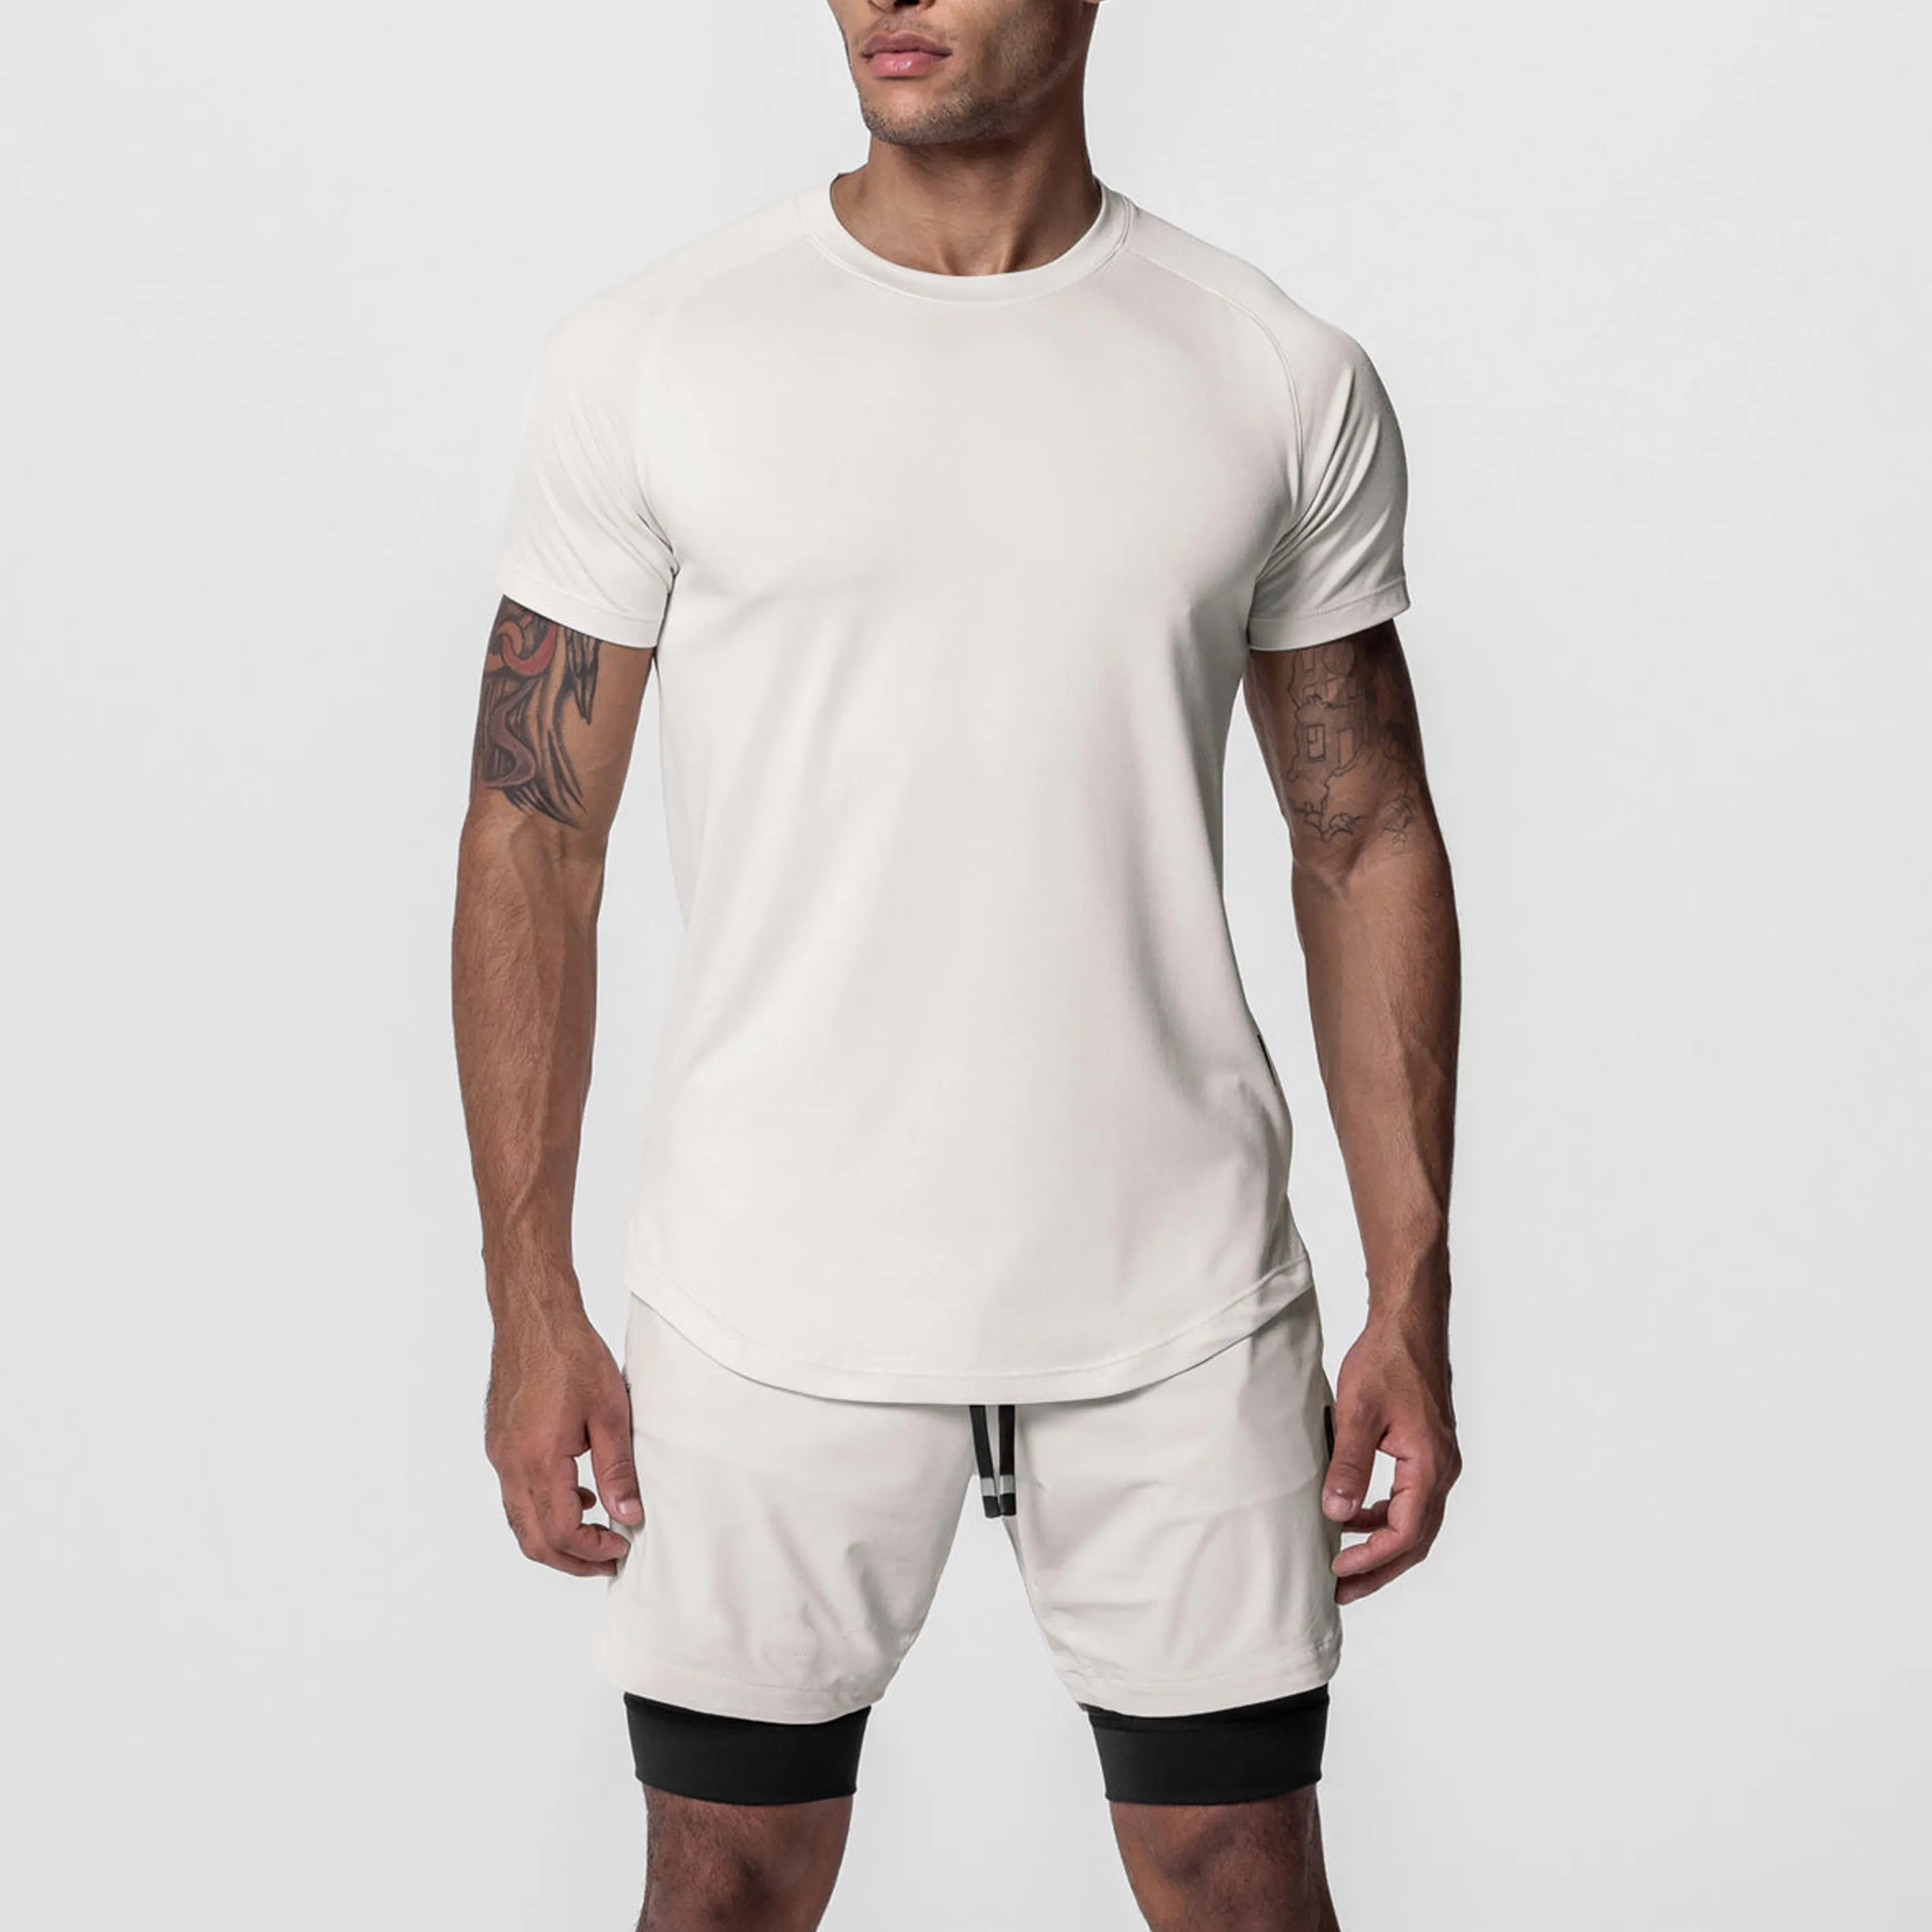 Мужская спортивная рубашка с коротким рукавом, простая футболка для бега, тренажерного зала, тренировок, быстросохнущая футболка